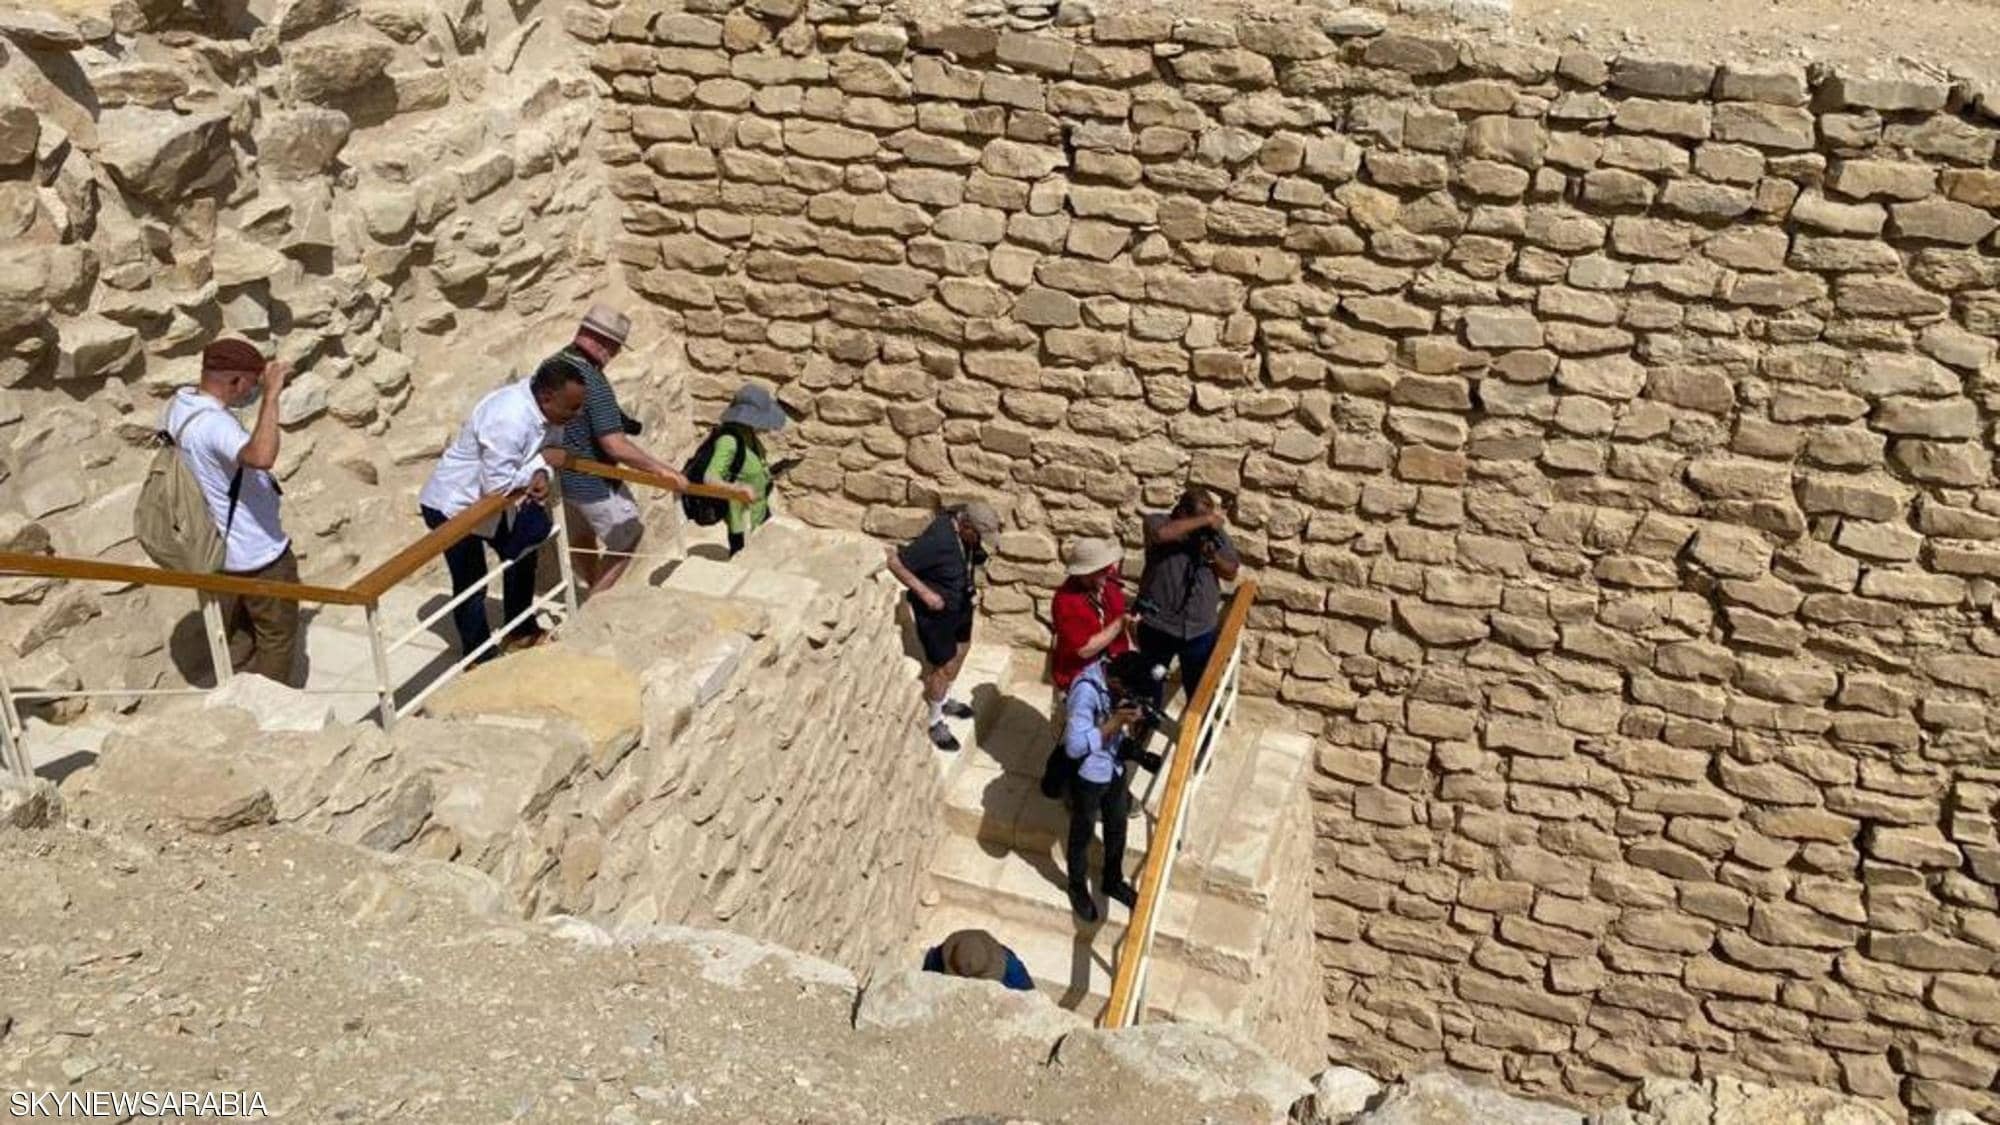 شاهدوا: افتتاح مقبرة الملك "زوسر" في سقارة بمصر